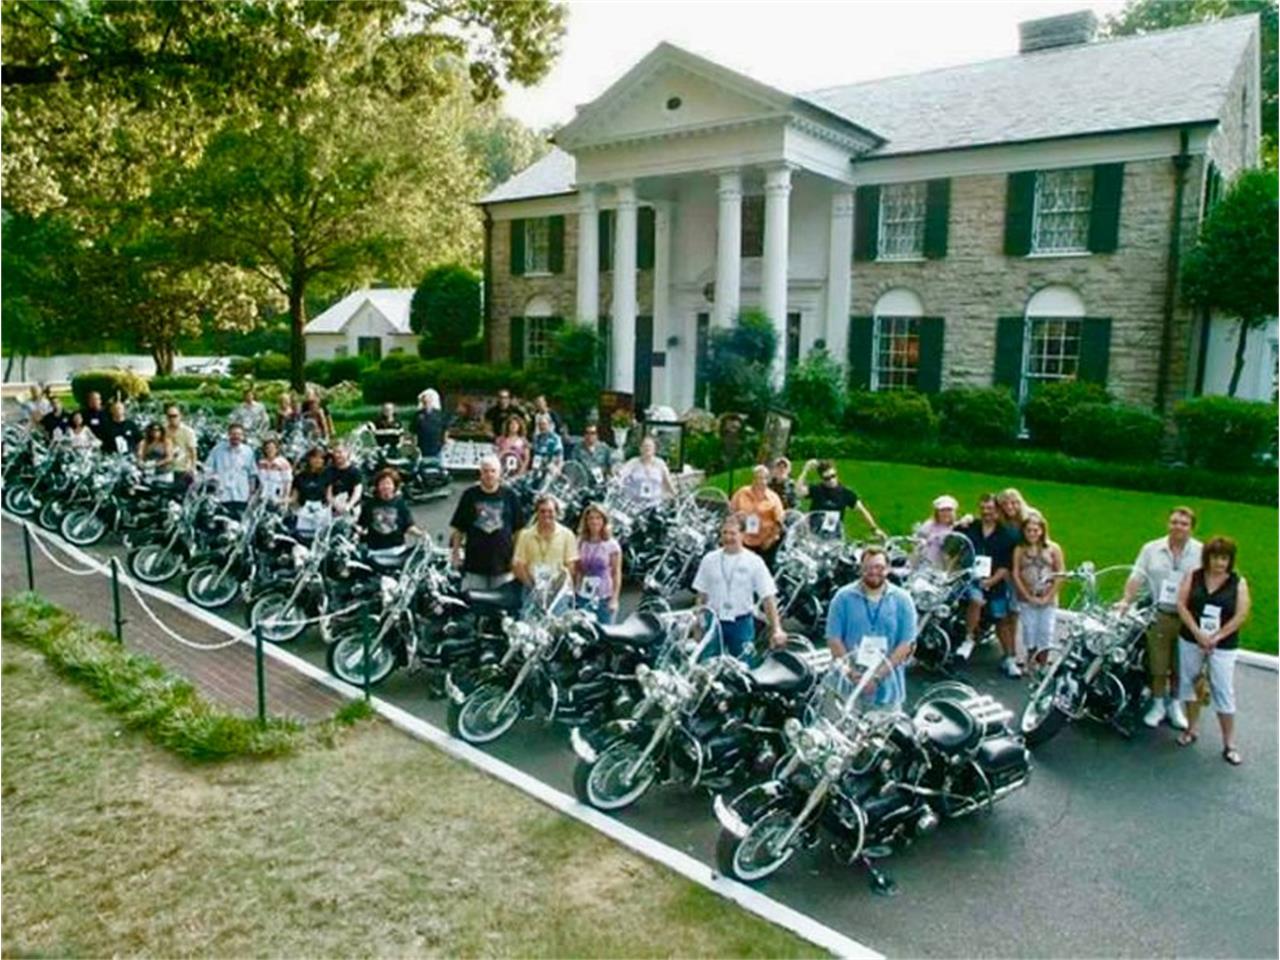 2007 Harley-Davidson Custom for sale in Sarasota, FL – photo 23